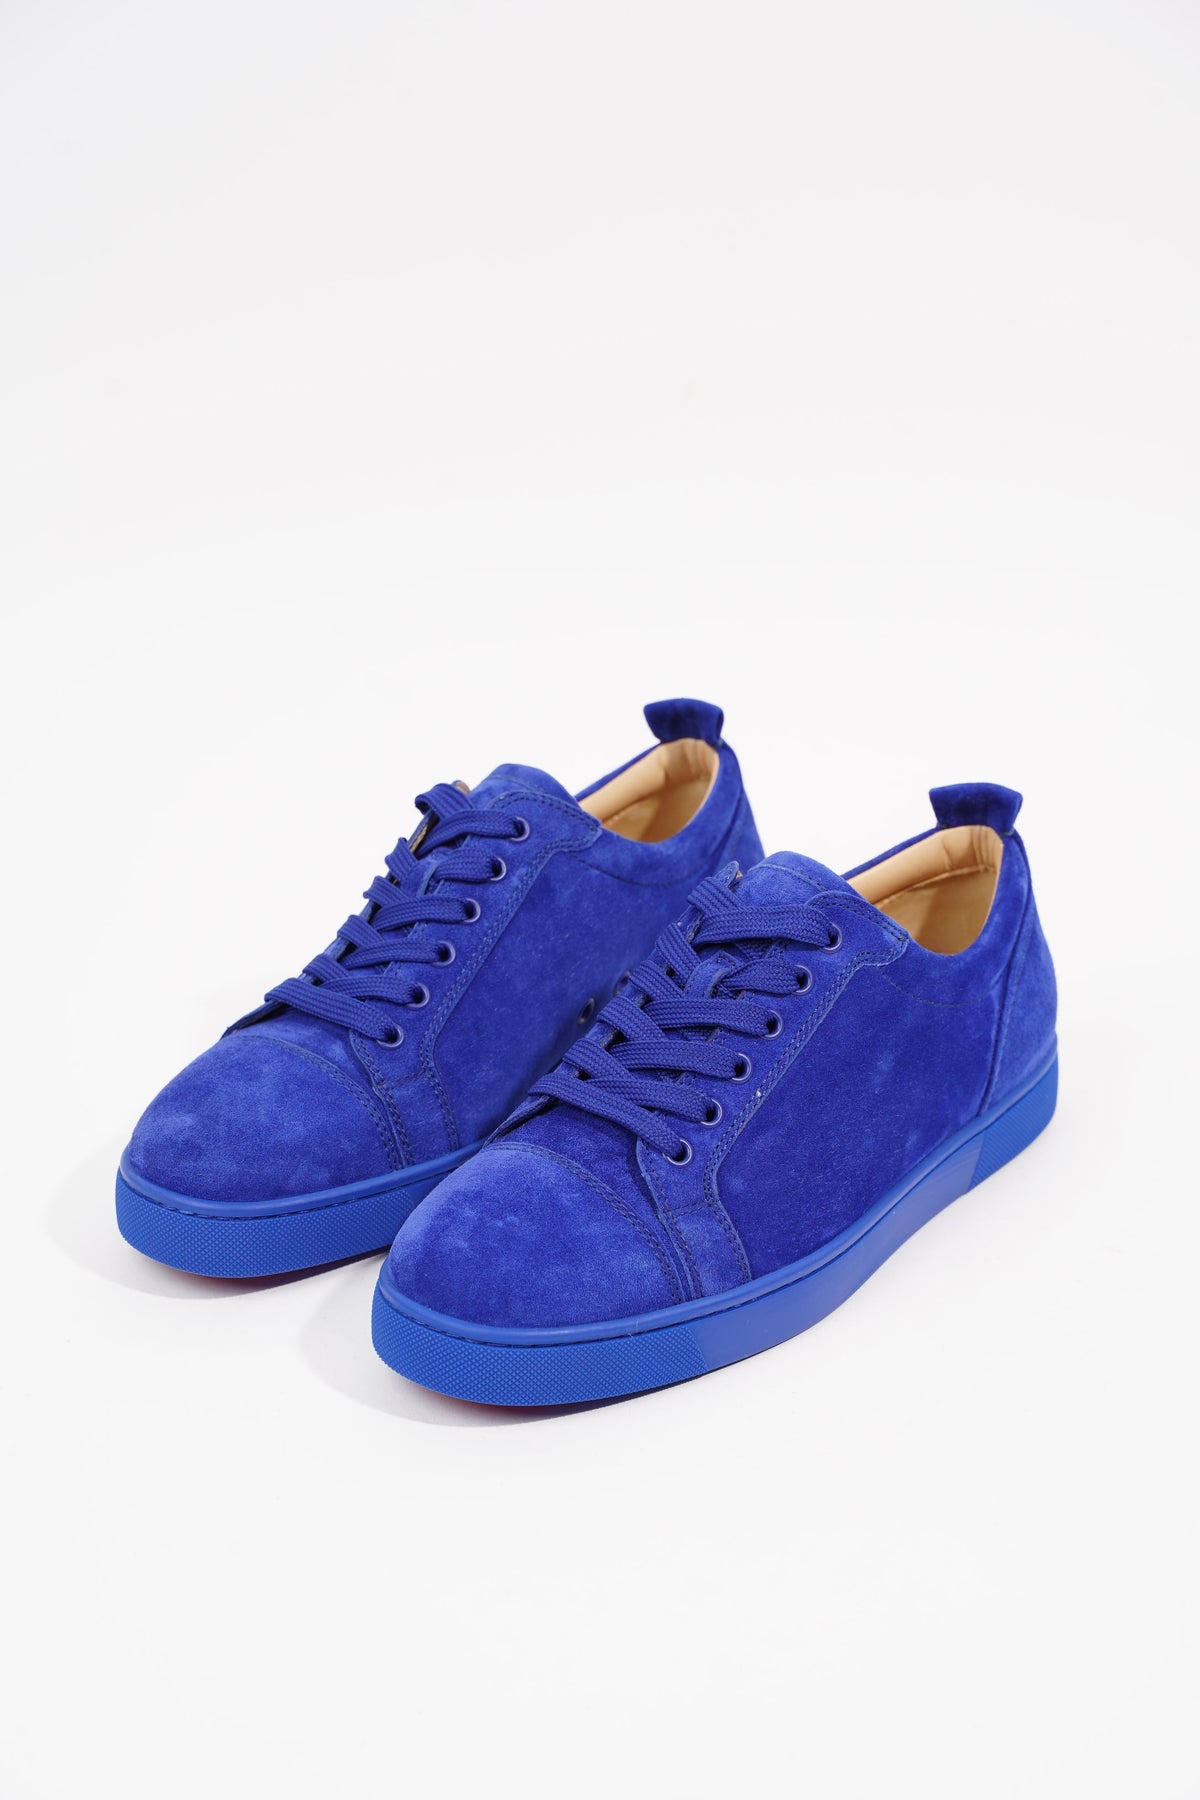 Louis Vuitton Womens Squad Trainer Boots Blue Denim EU 39 / UK 6 – Luxe  Collective